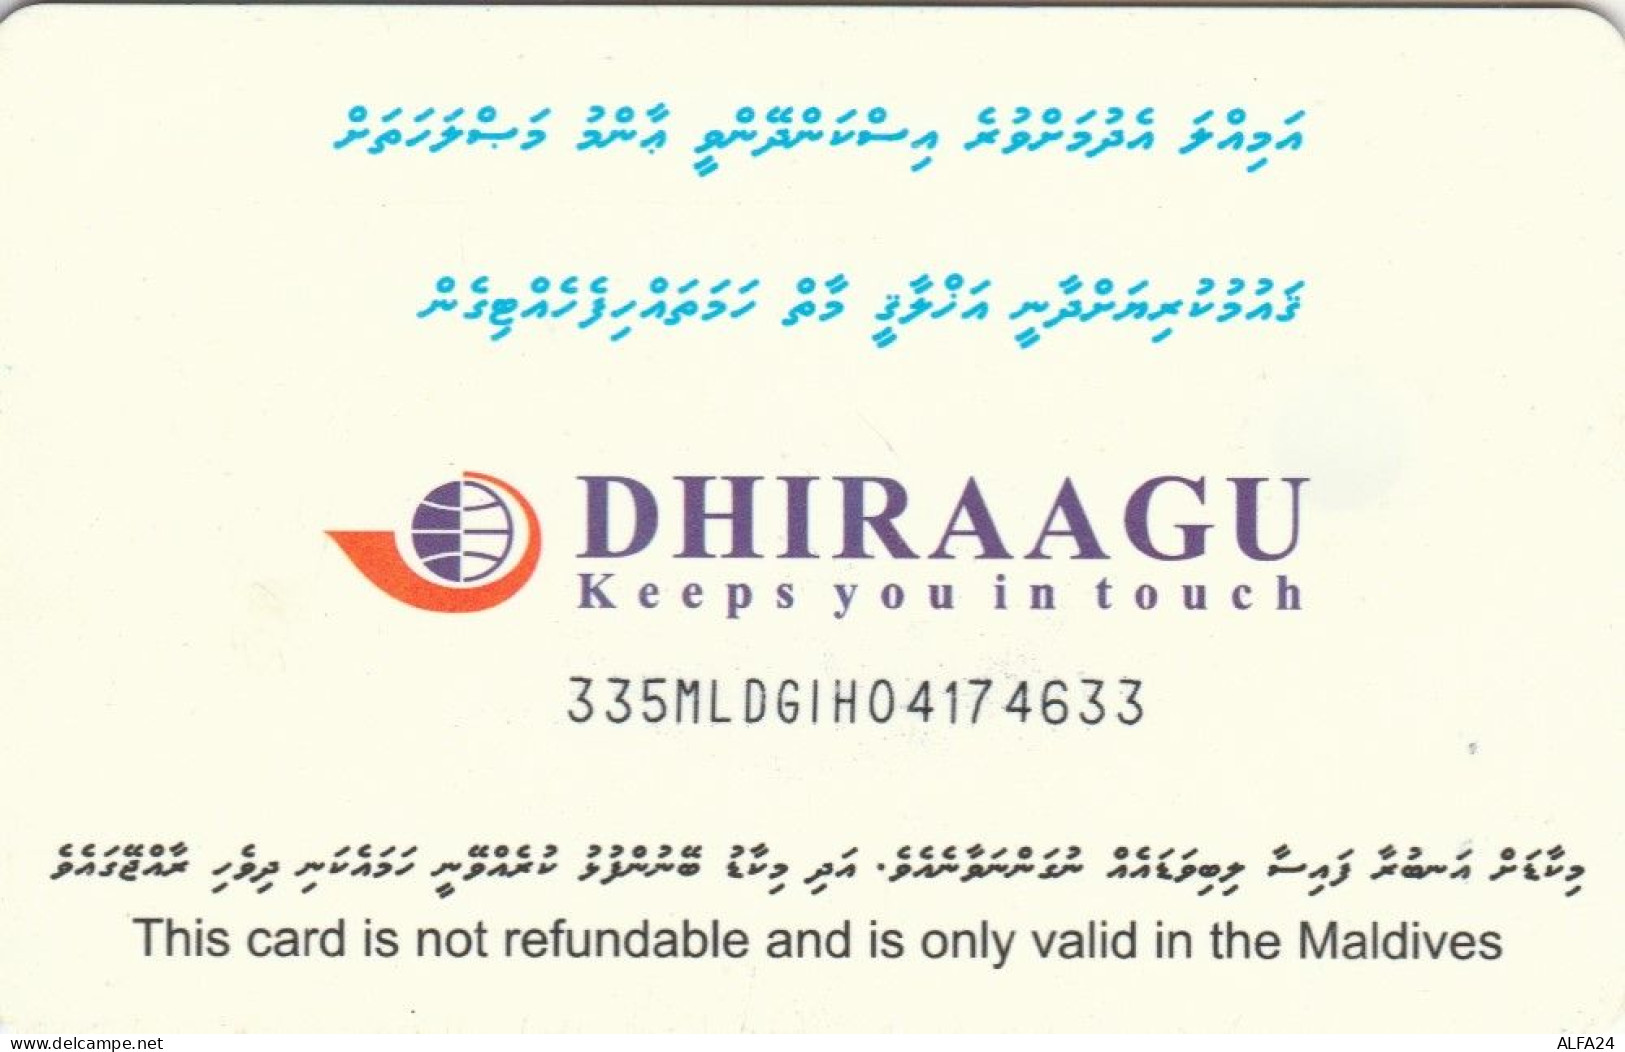 PHONE CARD MALDIVE (E50.4.3 - Maldiven